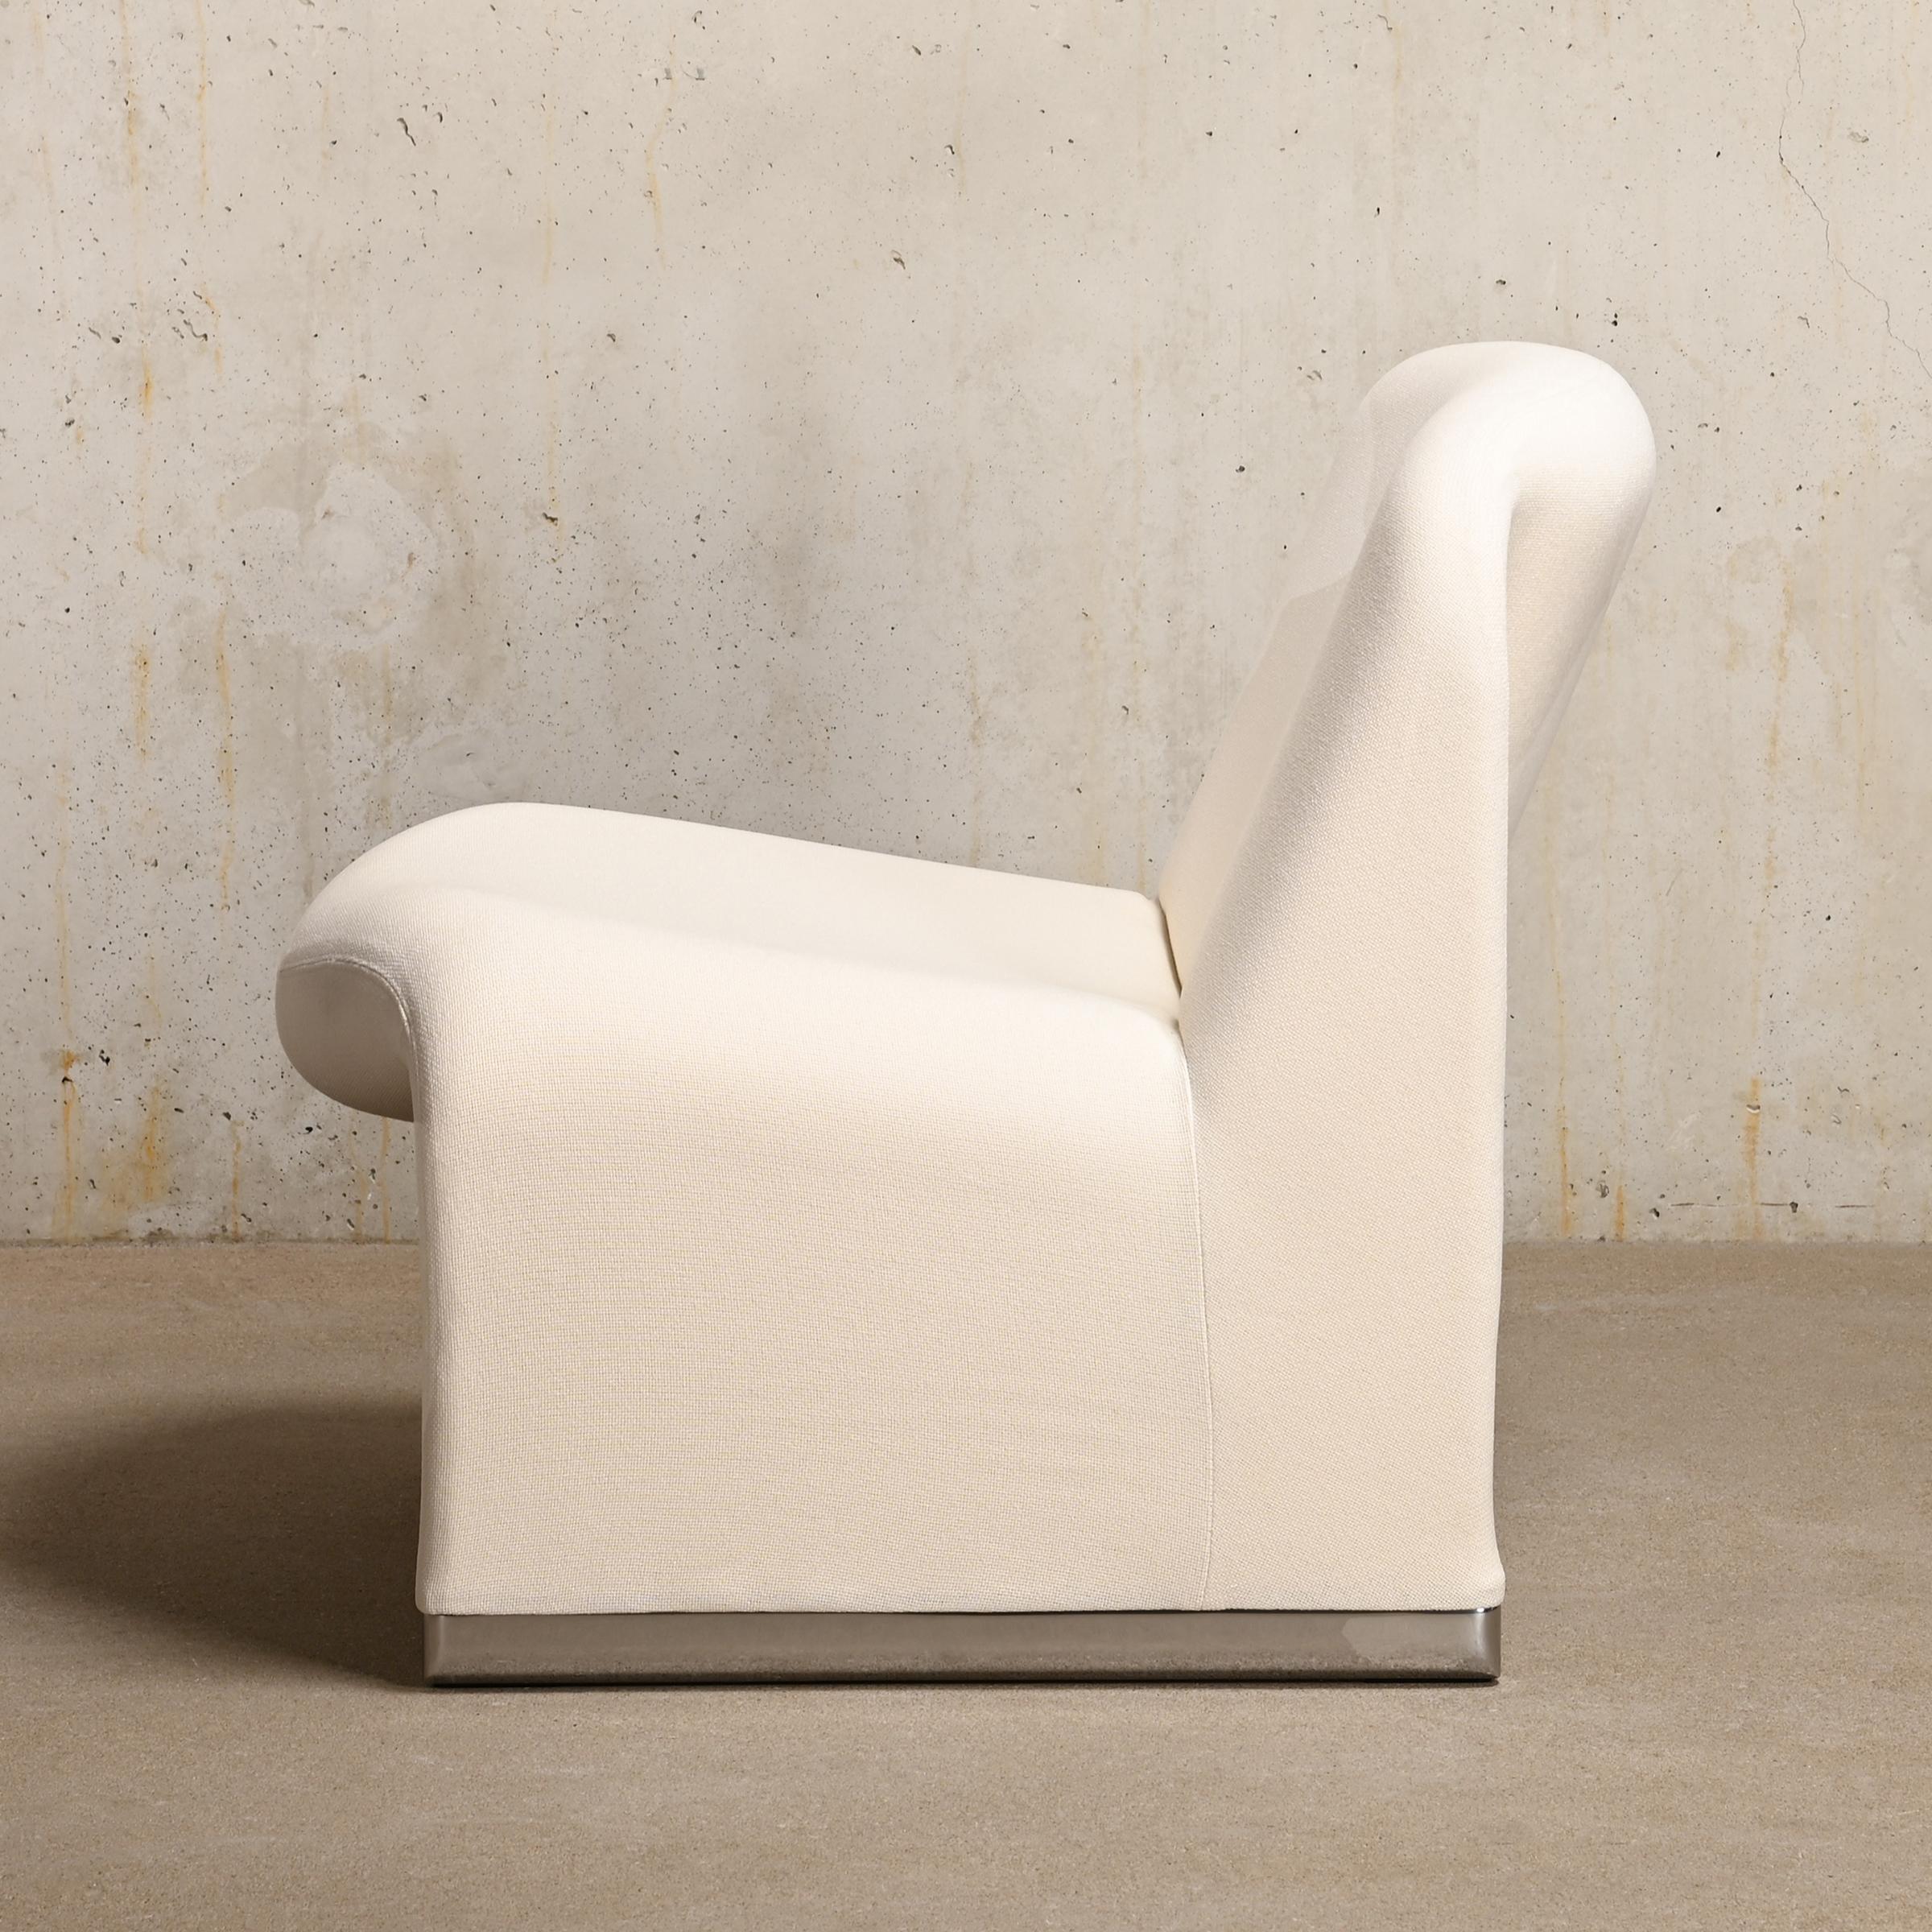 Die ikonischen Alky Lounge Chairs wurden in den sechziger Jahren von Giancarlo Piretti für Anonima Castelli, Italien, entworfen. Die Form des Stuhls ist mit Schaumstoff direkt auf einen Metallrahmen mit elastischen Bändern gedruckt, um Komfort und